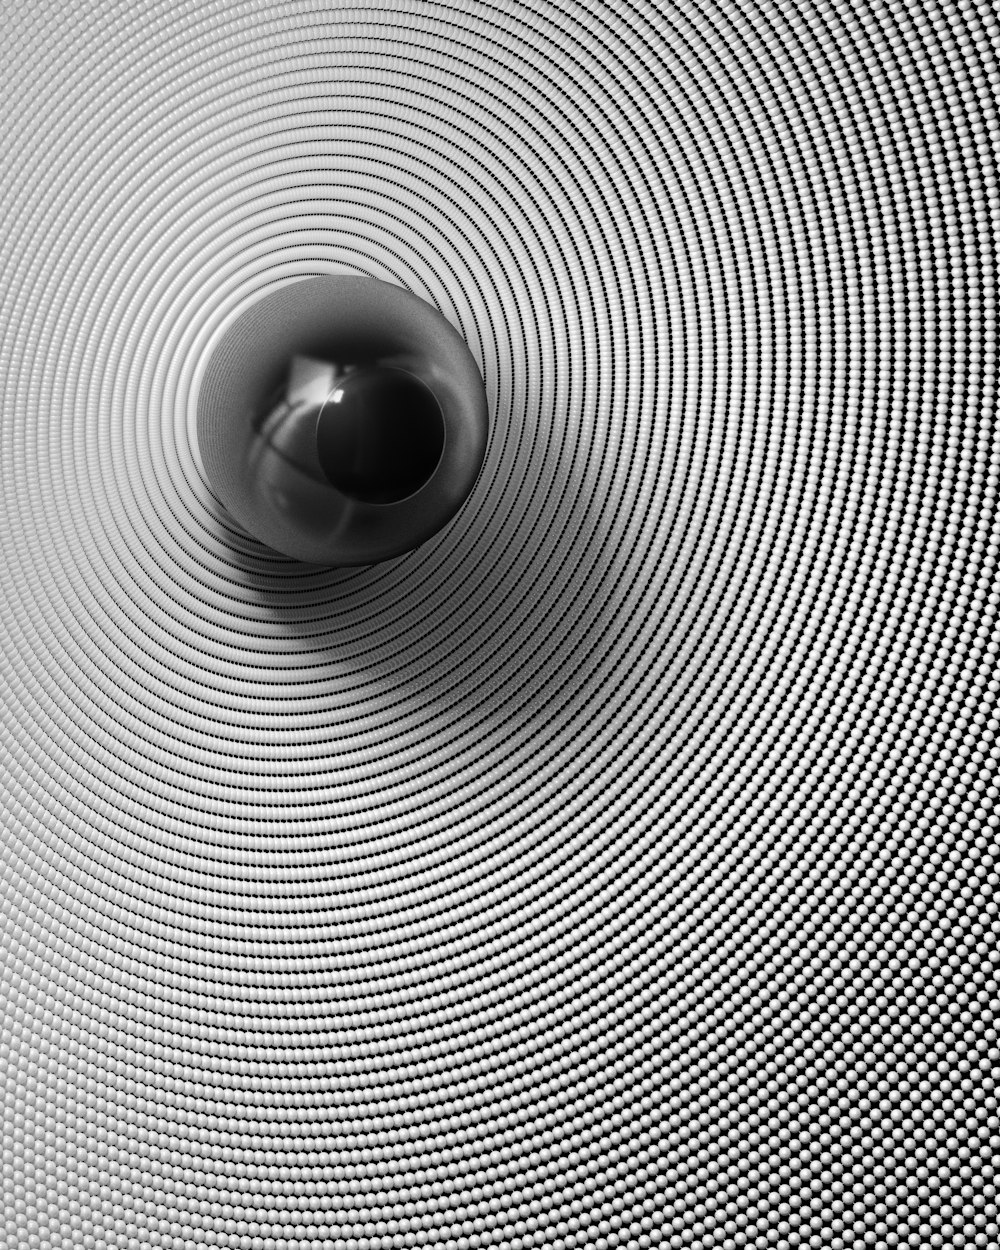 Una foto in bianco e nero di una sfera